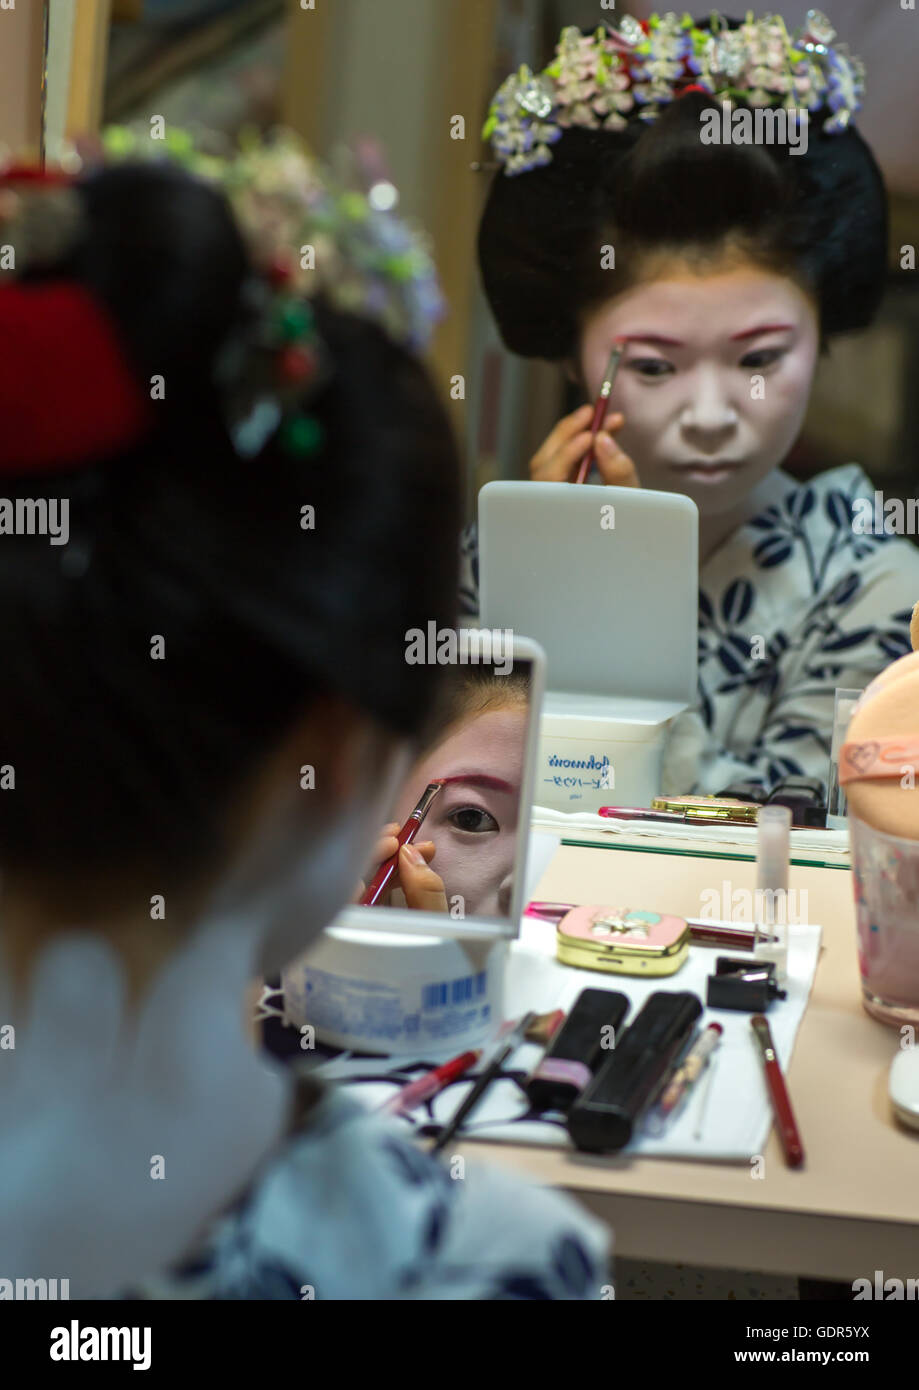 16 anni chiamato maiko chikasaya durante un make up session, la regione di Kansai, Kyoto, Giappone Foto Stock